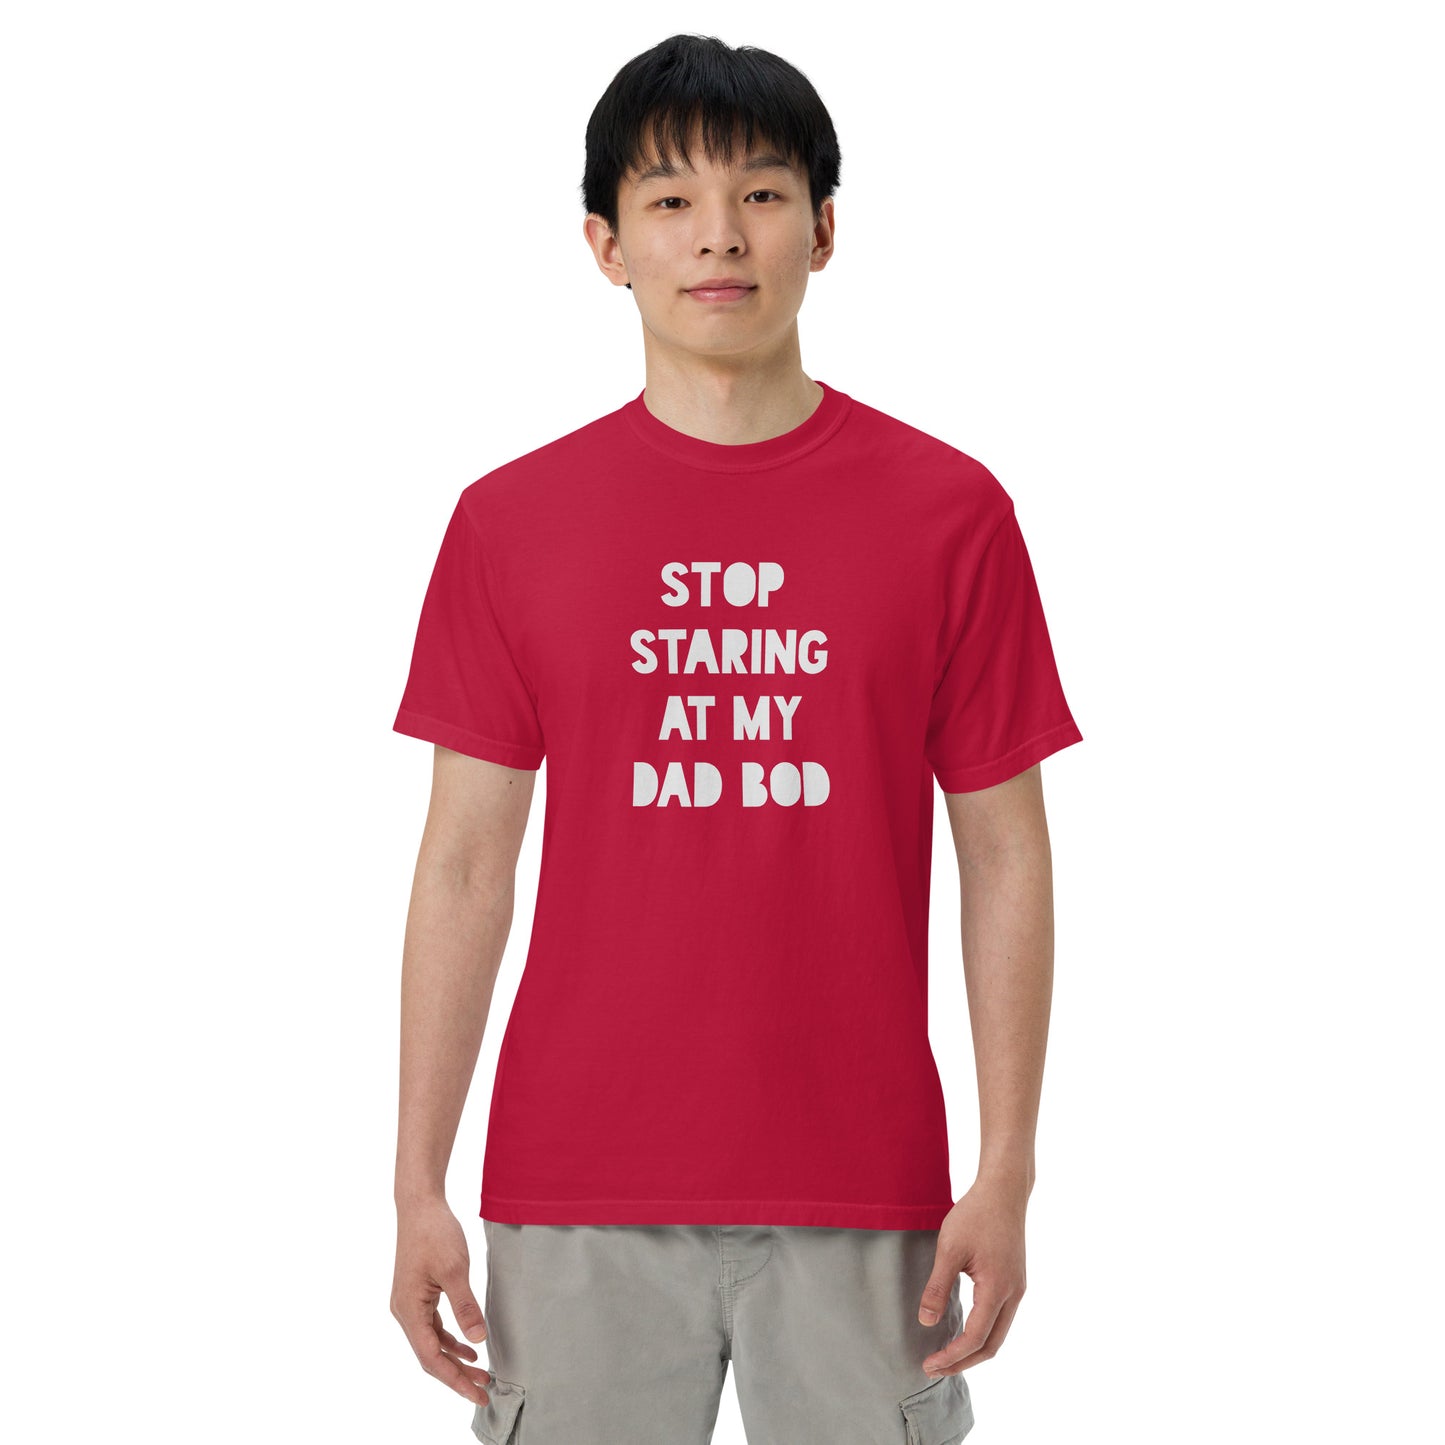 Stop Staring At My Dad Bod Printed Tshirt